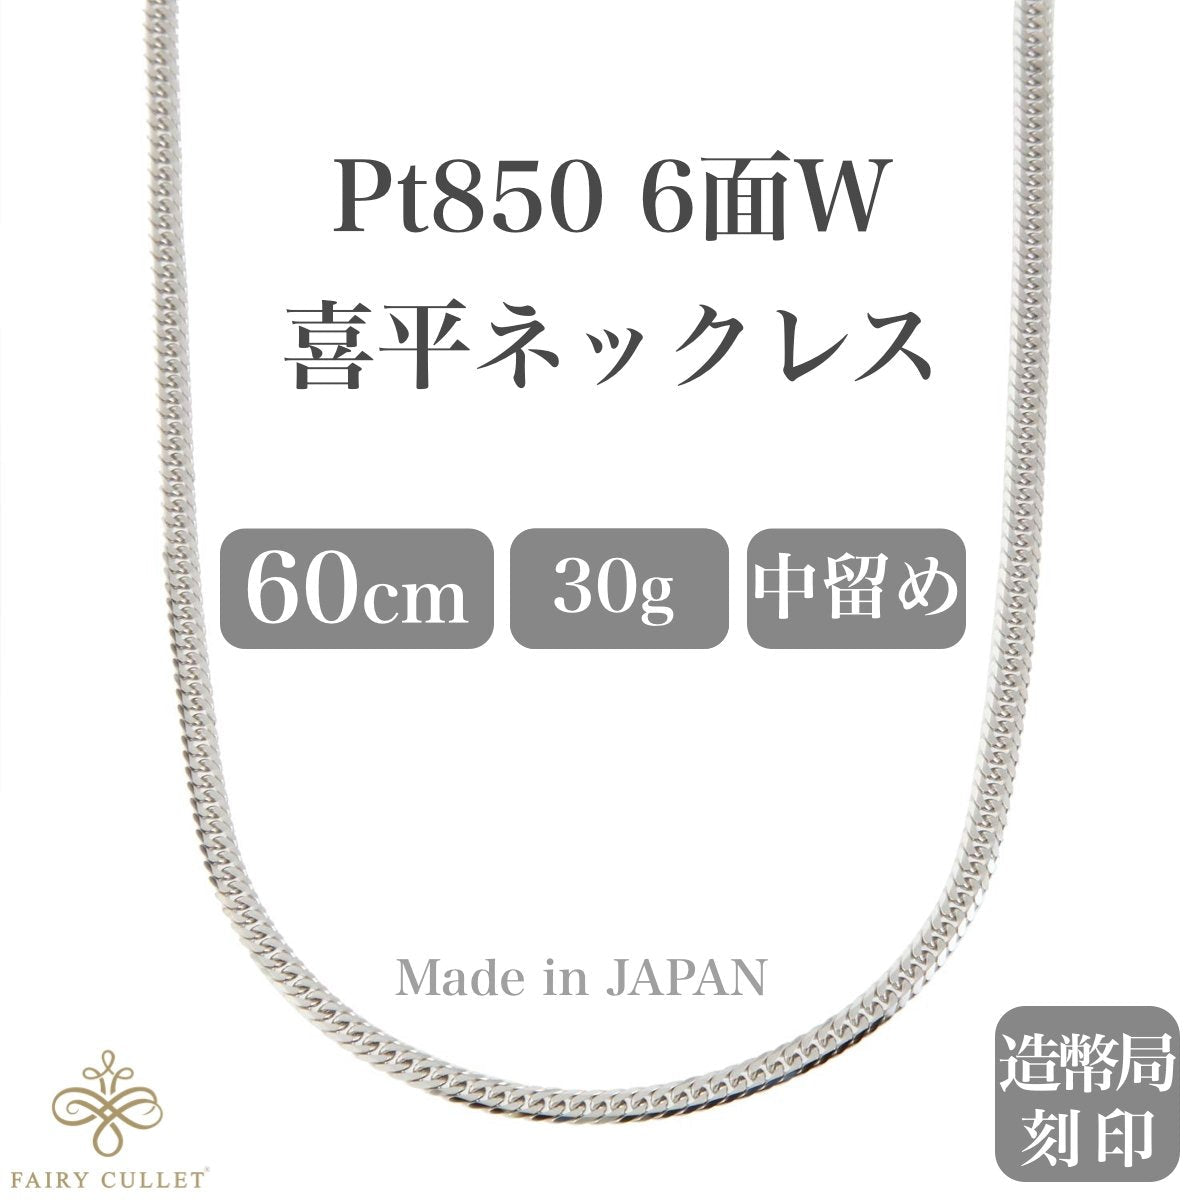 プラチナネックレス Pt850 6面W喜平チェーン 日本製 検定印 30g 60cm 